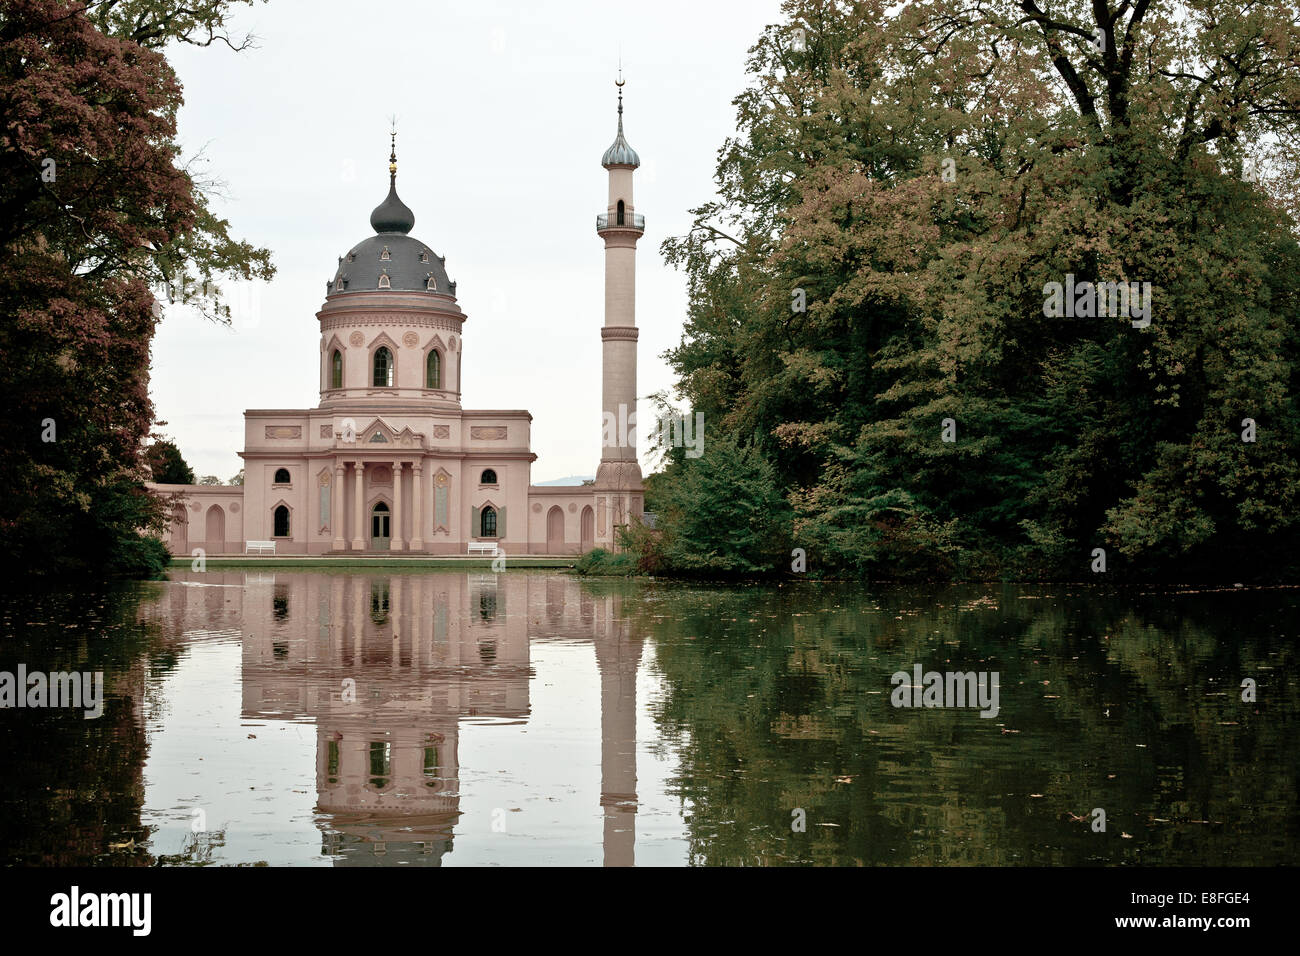 Schwetzingen Mosque, Germany Stock Photo